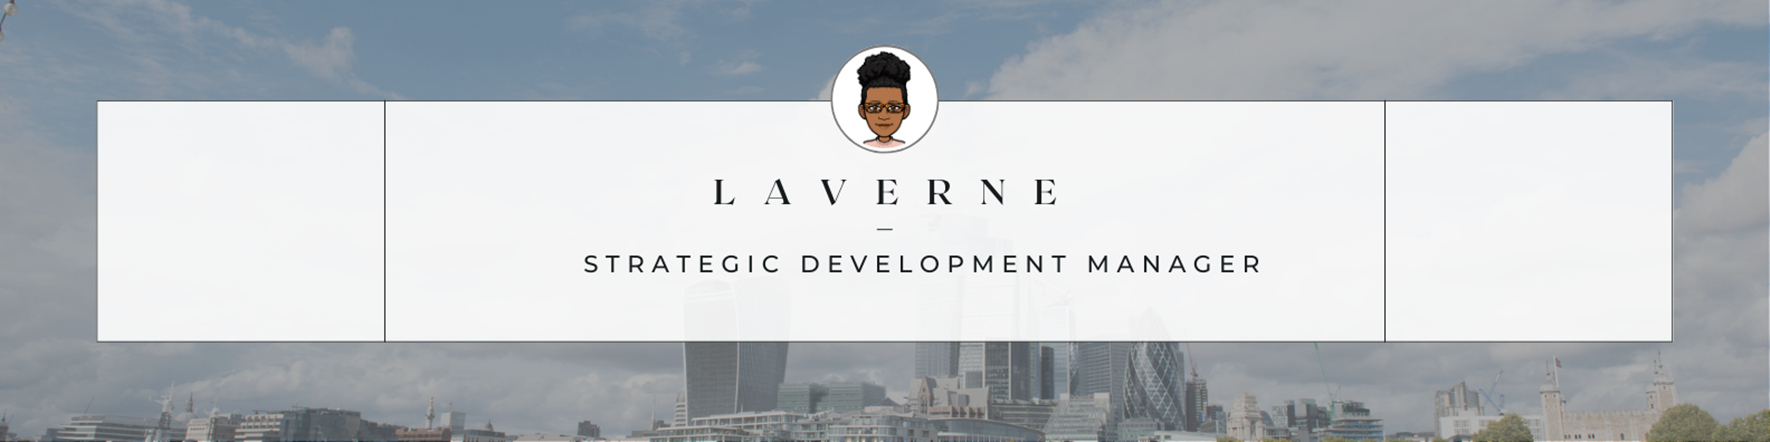 Laverne's Career Journey Header